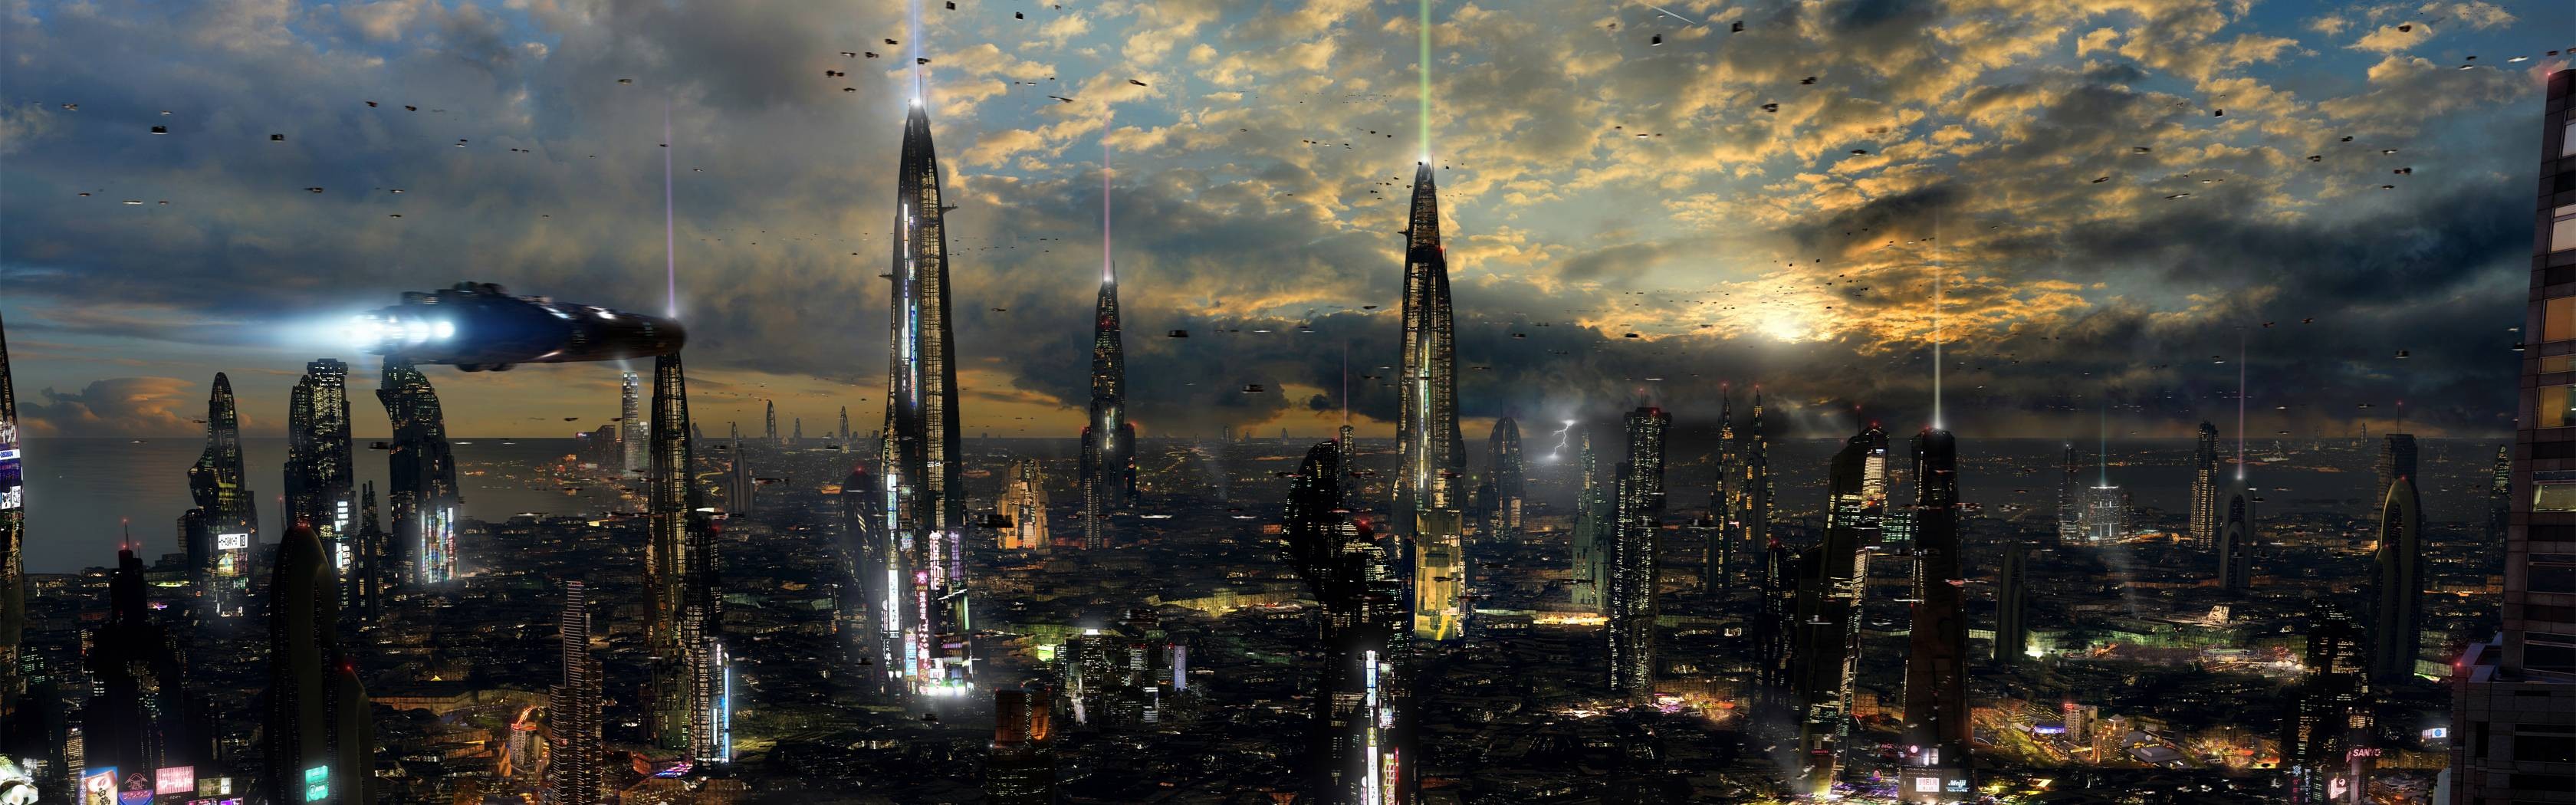 Rascacielos futuro